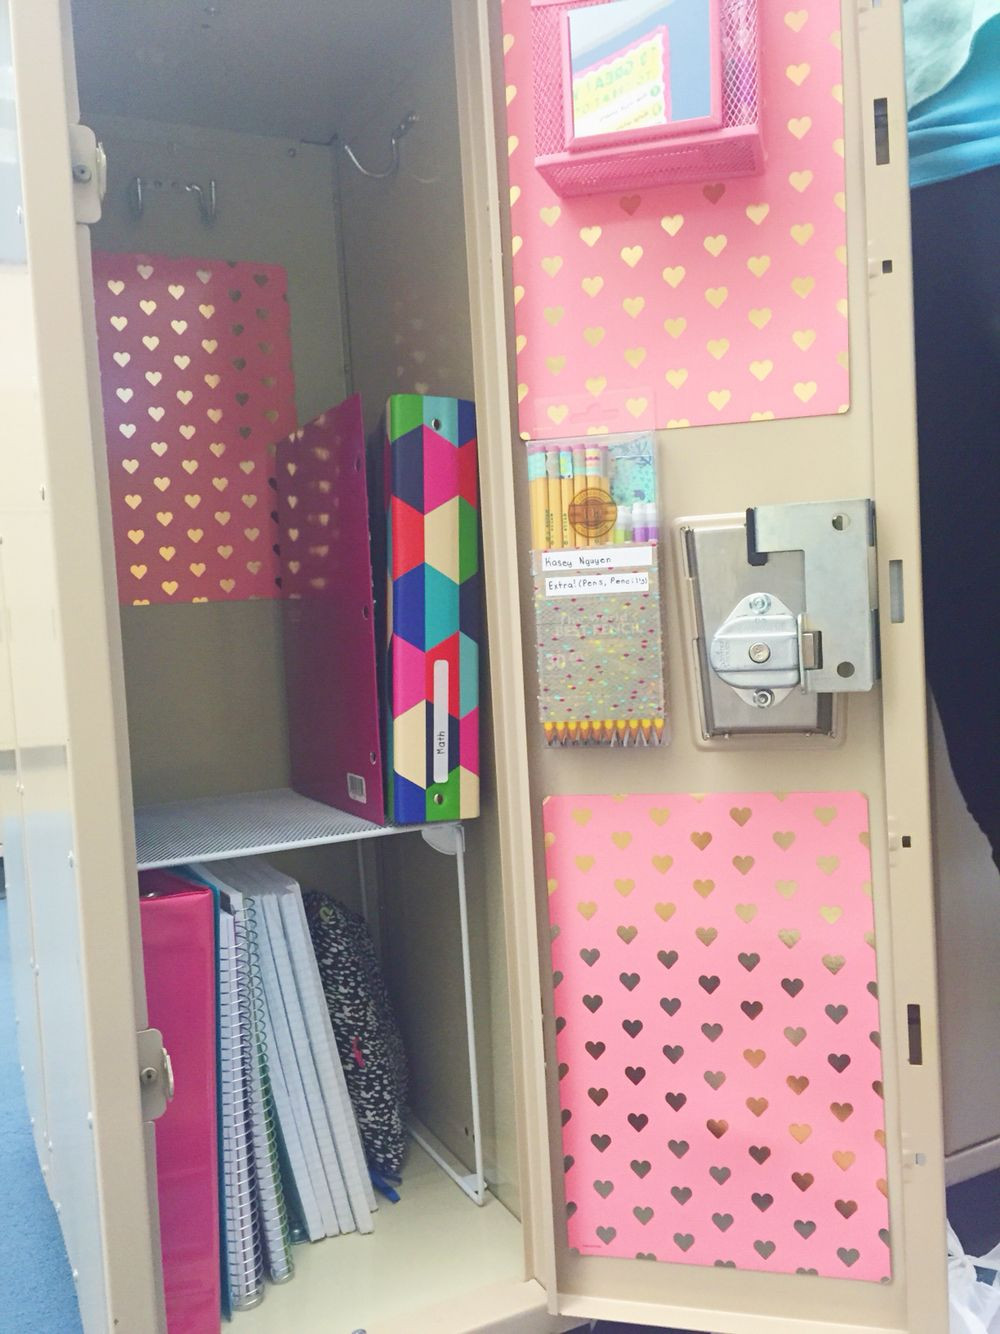 DIY Locker Organization Ideas
 DIY Locker Decor Ideas for Your Boring Locker Decorations